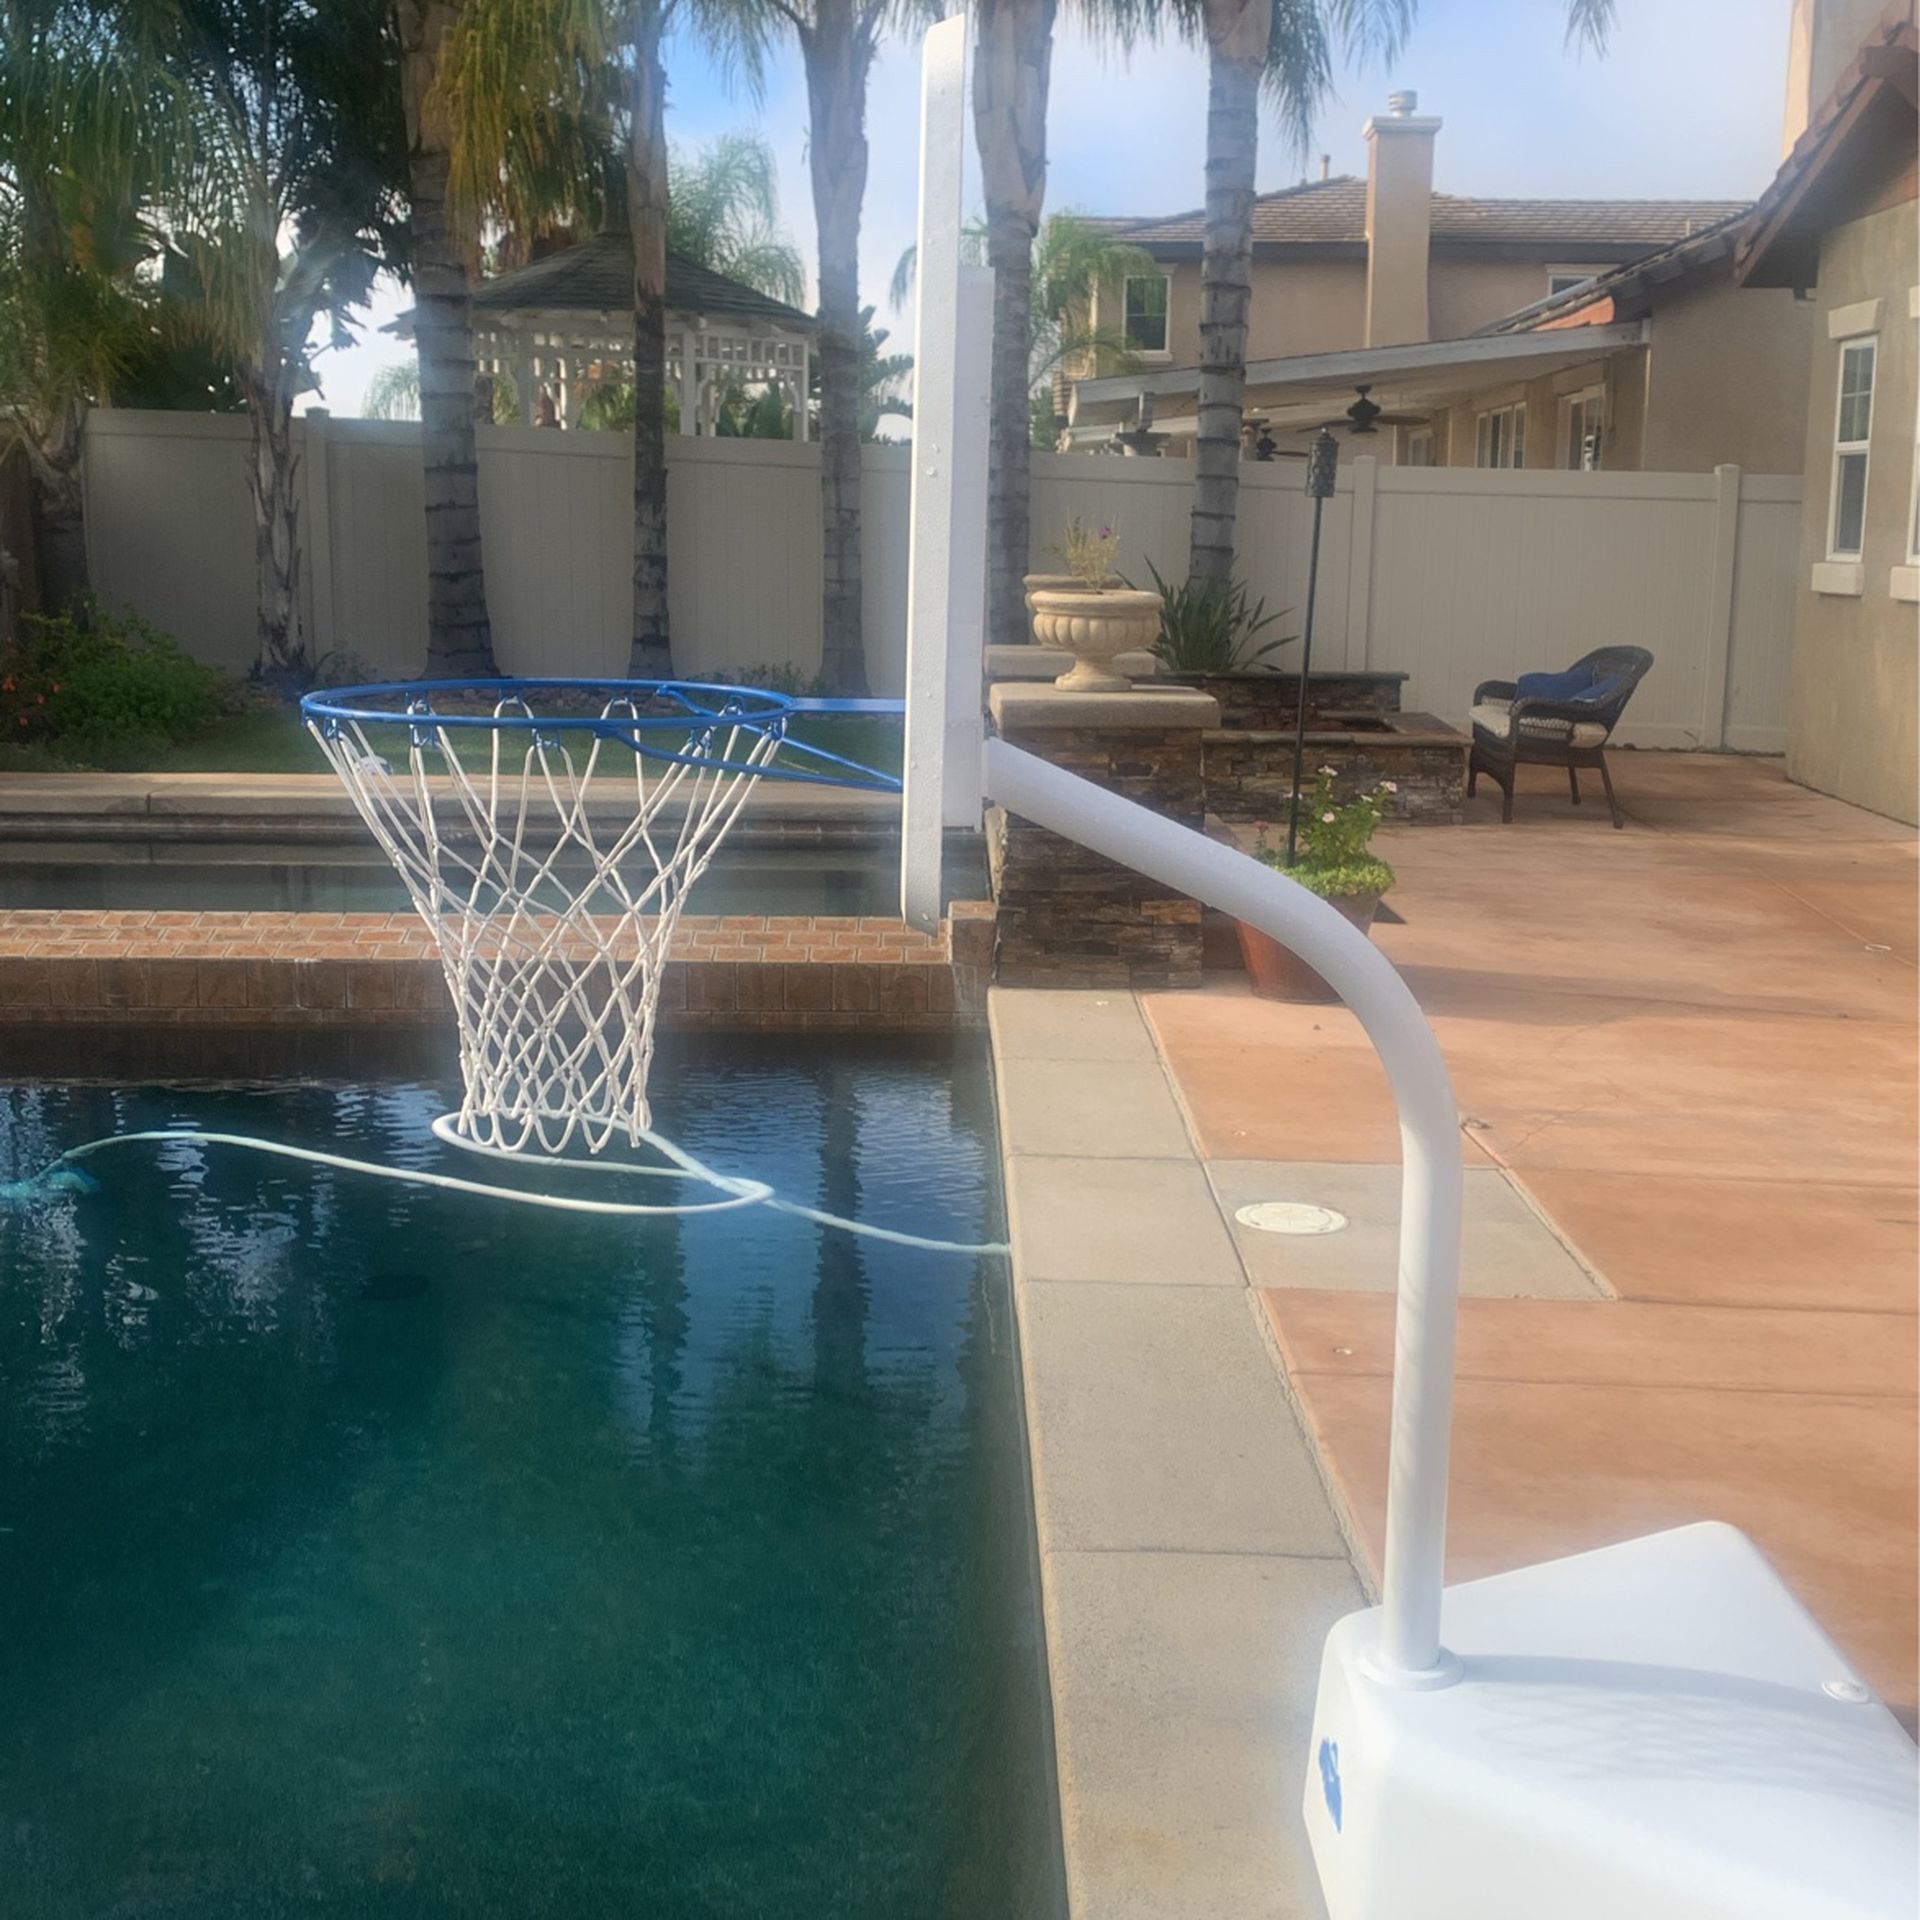 Pool Basketball hoop